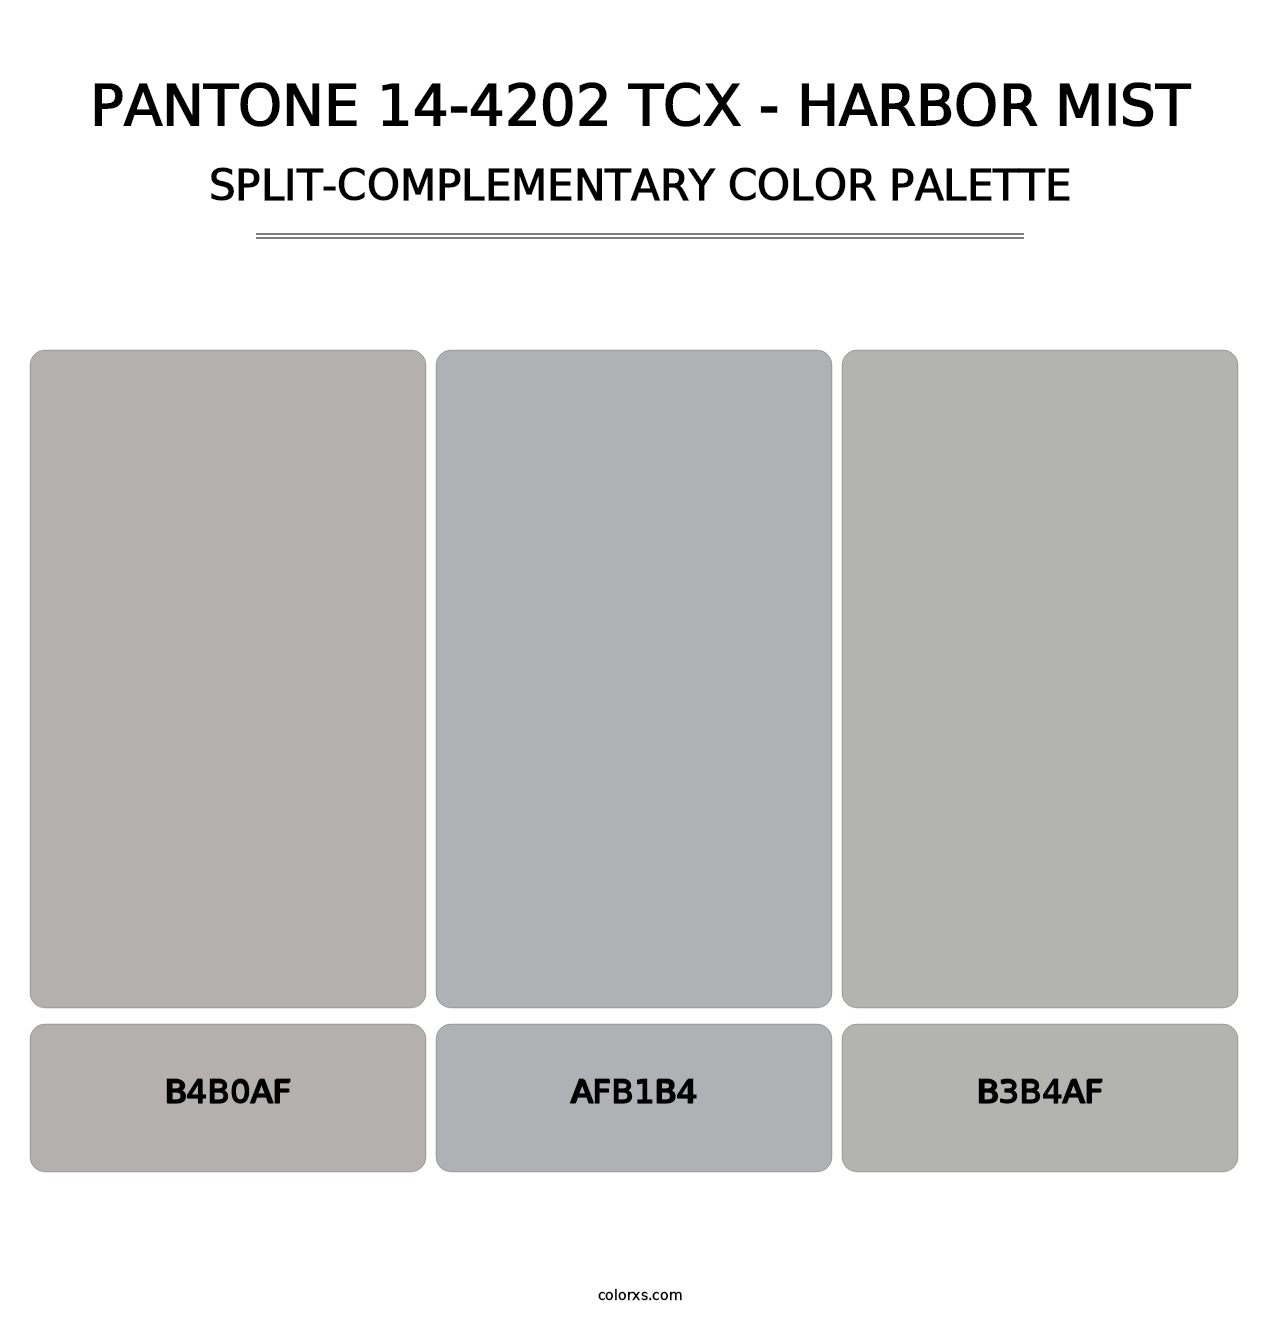 PANTONE 14-4202 TCX - Harbor Mist - Split-Complementary Color Palette